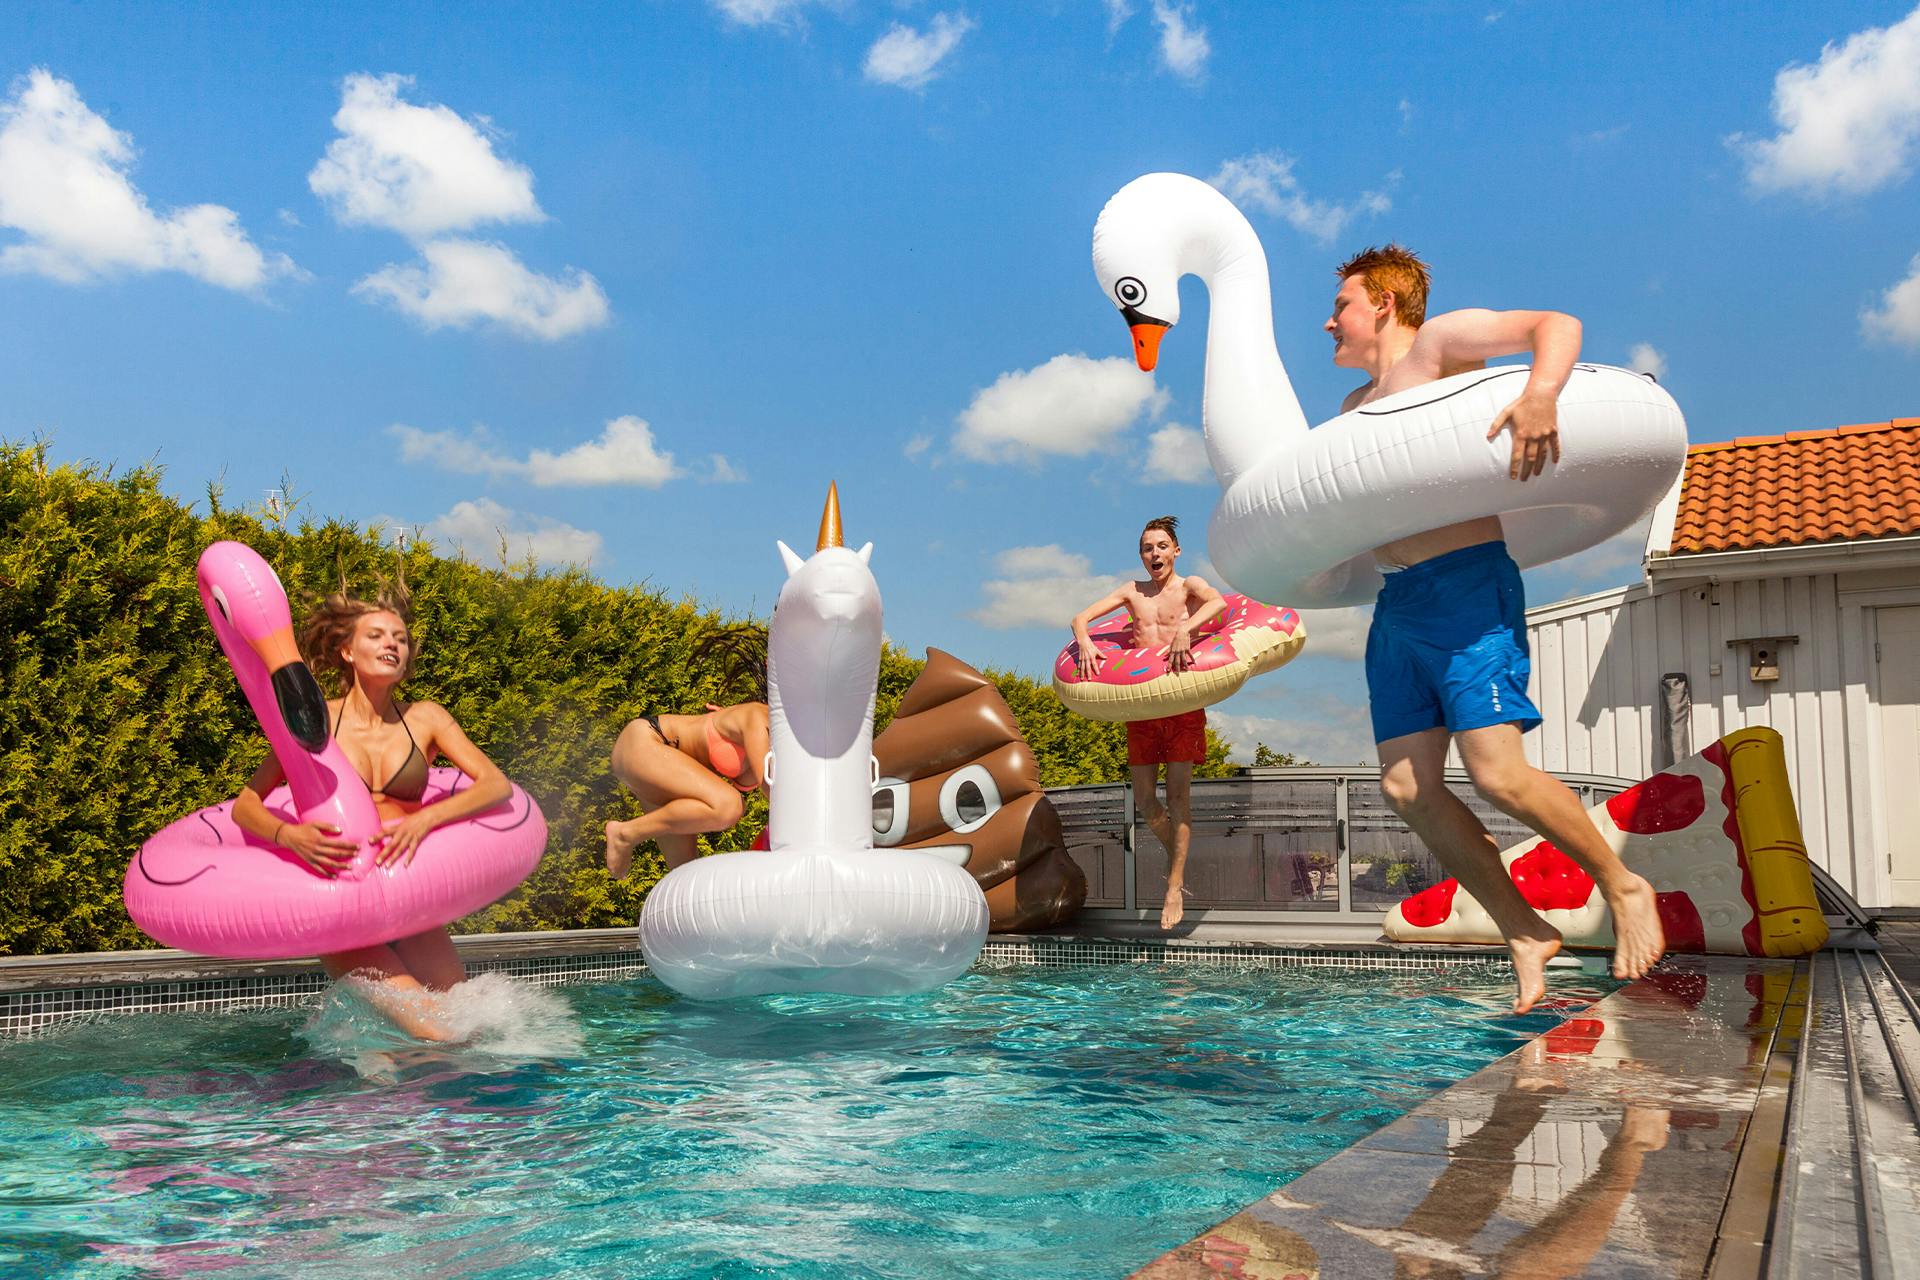  Glückliche Menschen im Pool mit aufblasbaren Badeanzügen und Spielzeug